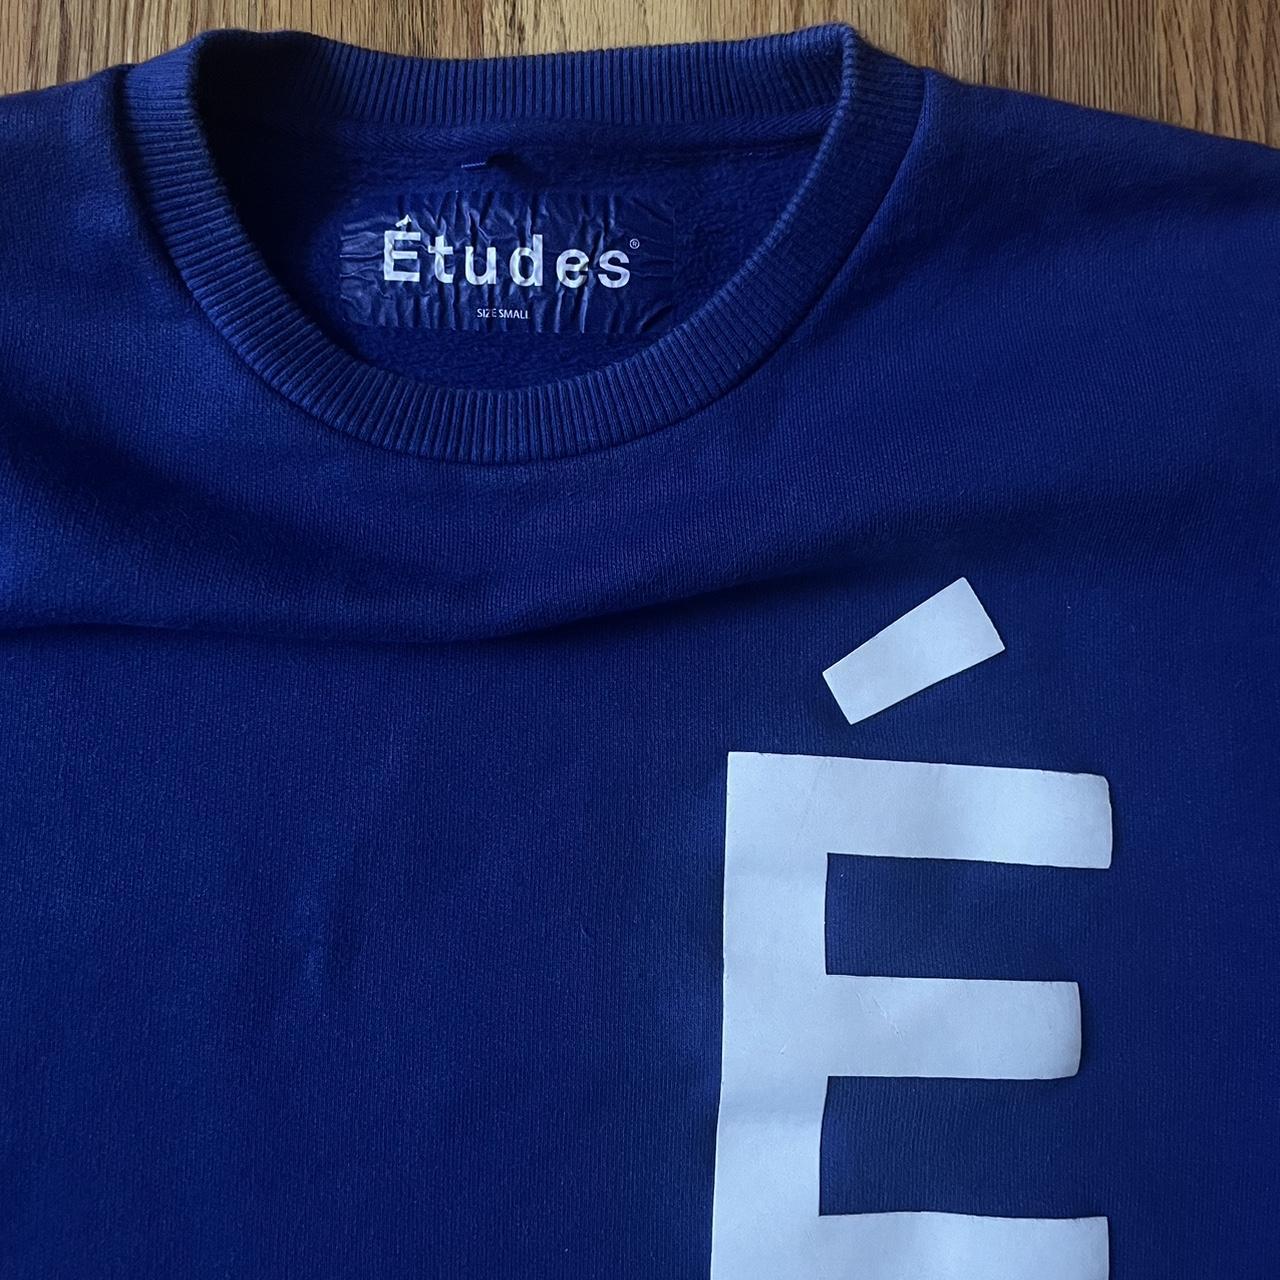 Études Men's Blue and White Sweatshirt (2)